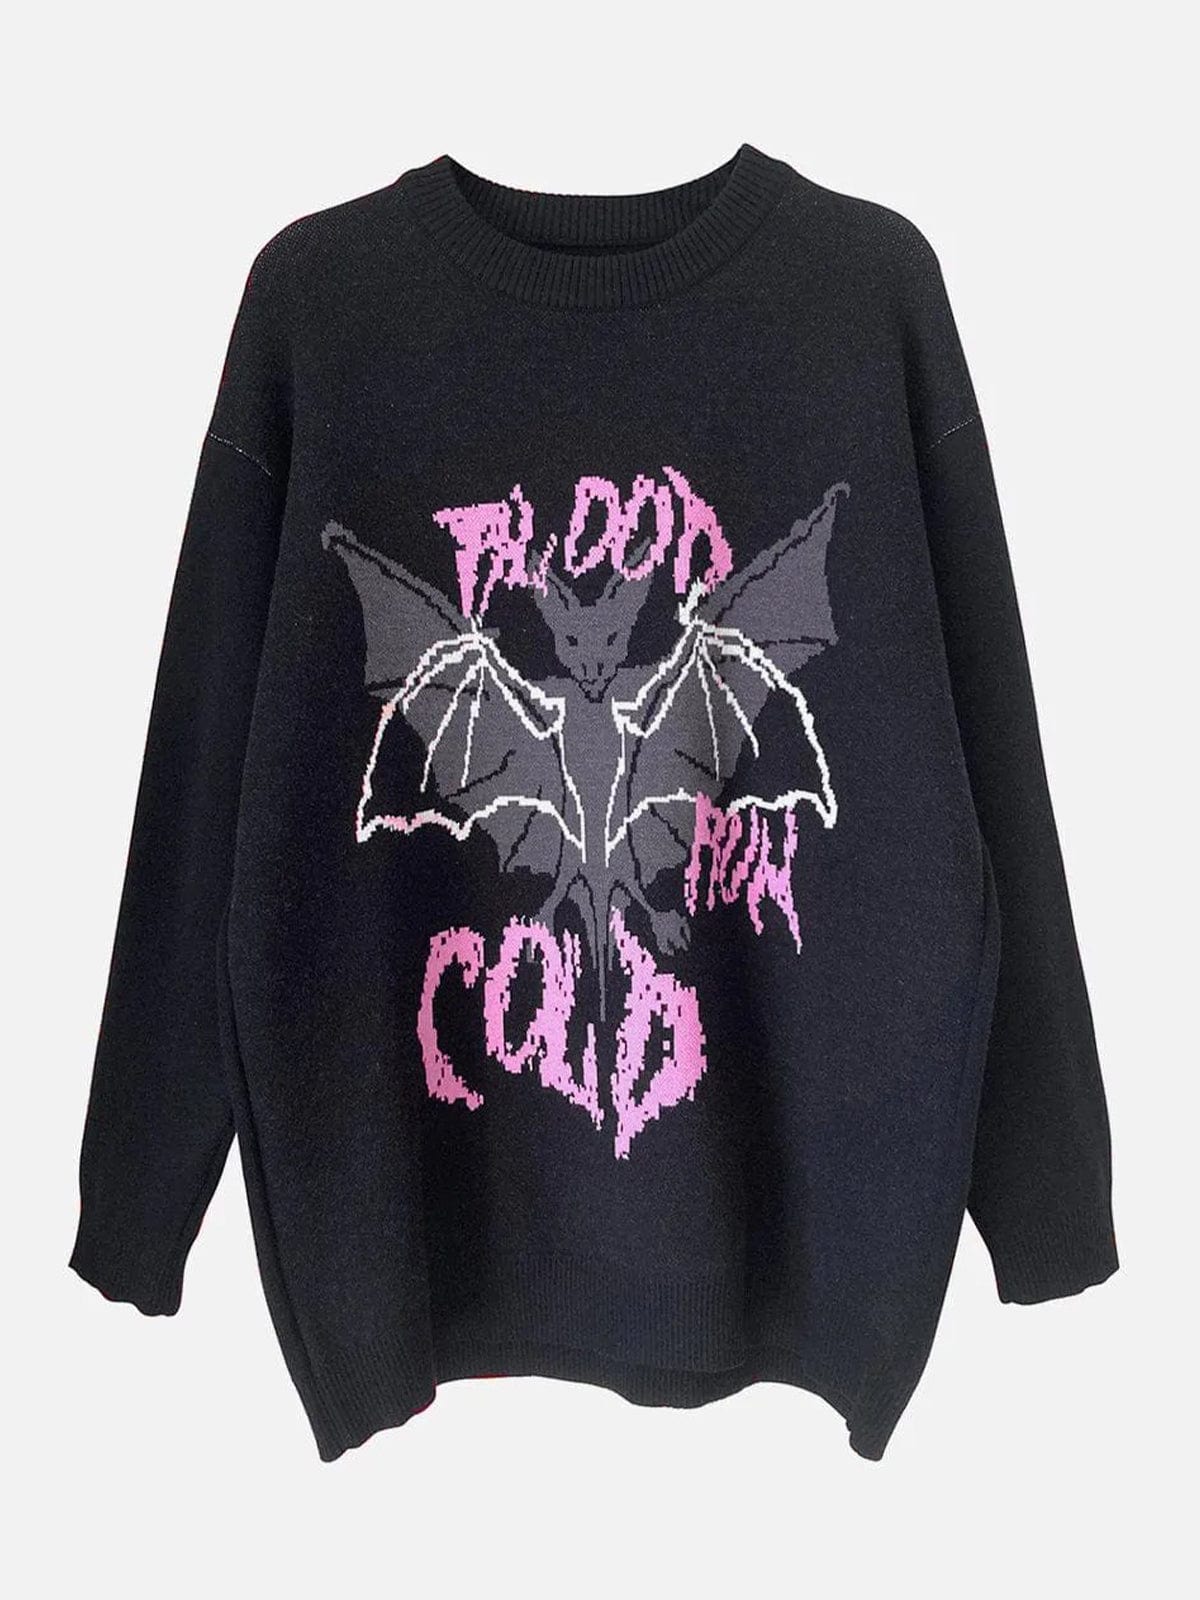 Bat Pattern Sweater Streetwear Brand Techwear Combat Tactical YUGEN THEORY